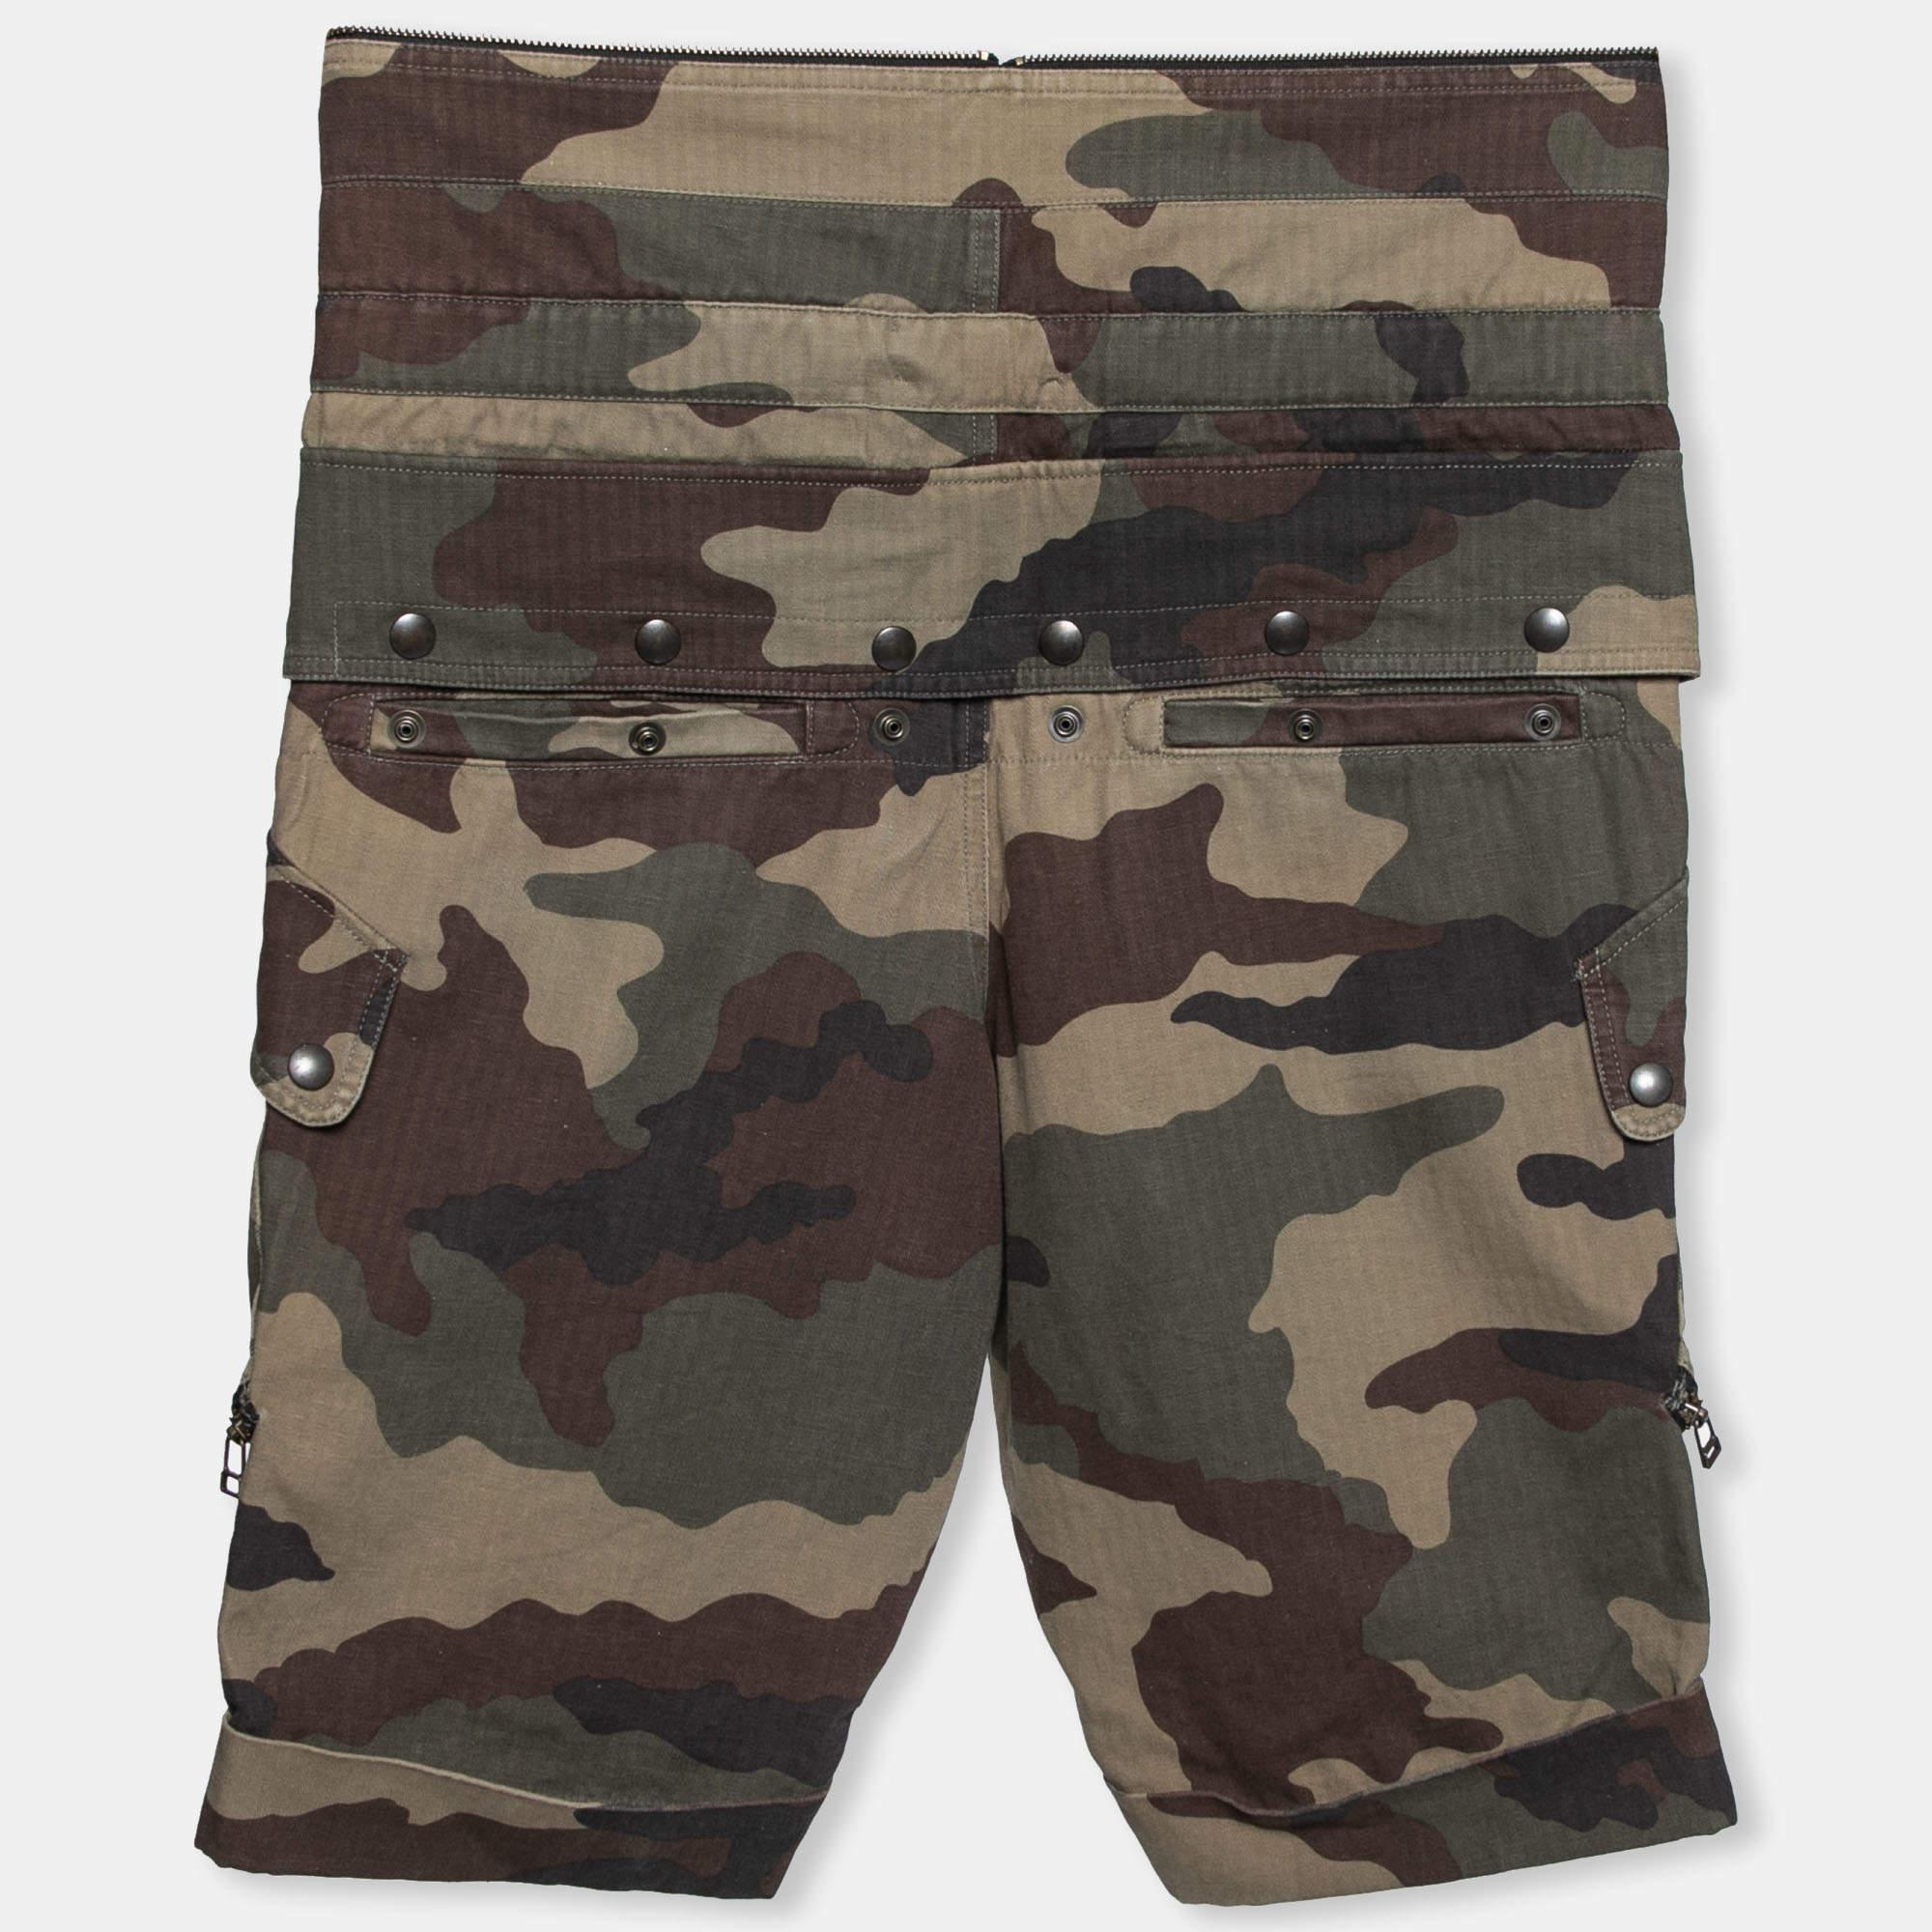 Mit diesen Shorts von Faith Connexion verbringen Sie den Tag bequem und stilvoll. Sie sind aus Baumwolle mit Camouflage-Aufdruck gefertigt und zeigen sich mit aufgerollten Bündchen. Diese Shorts sind mit einem Reißverschluss versehen. Aktualisieren